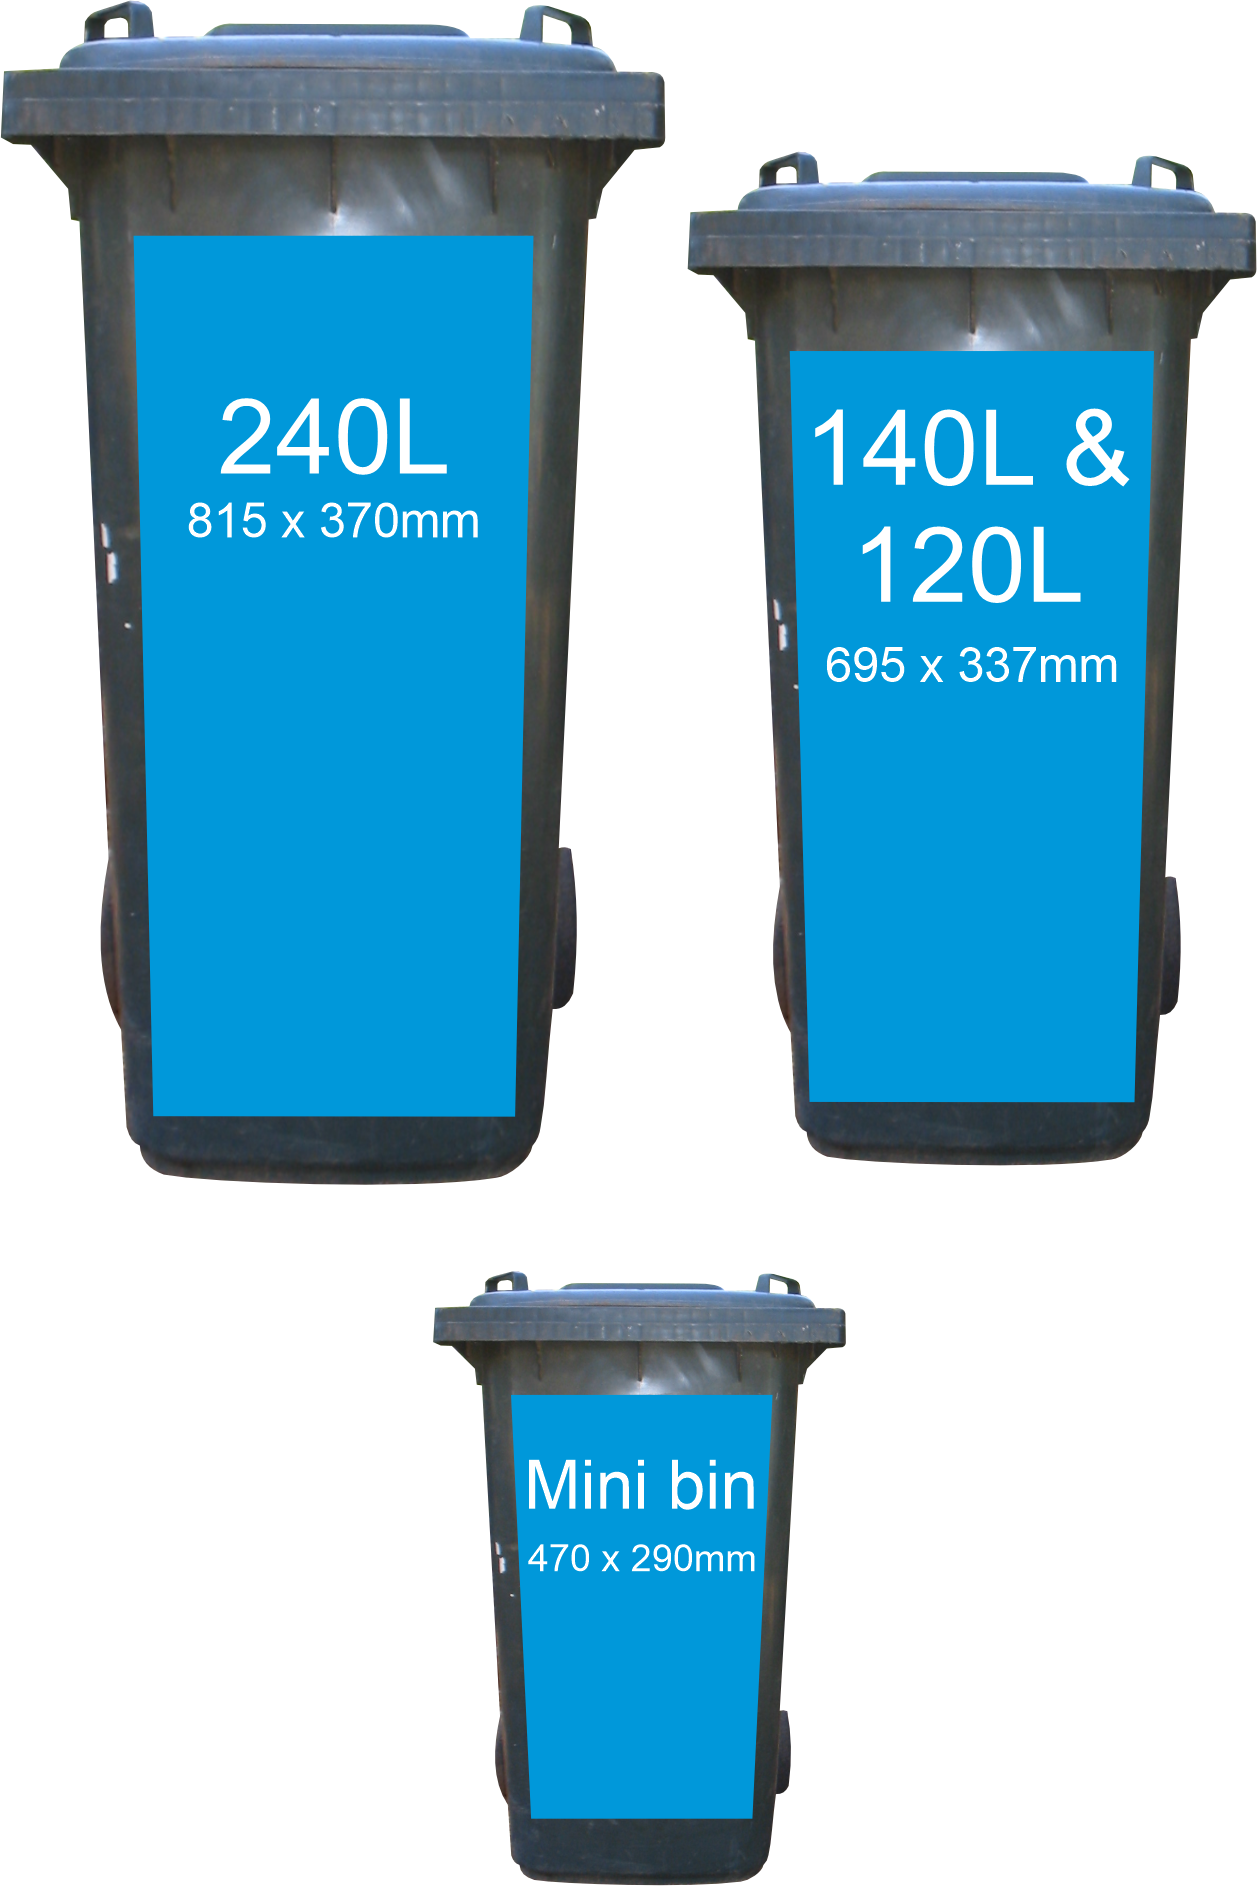 sizes in Beach wheelie bin sticker